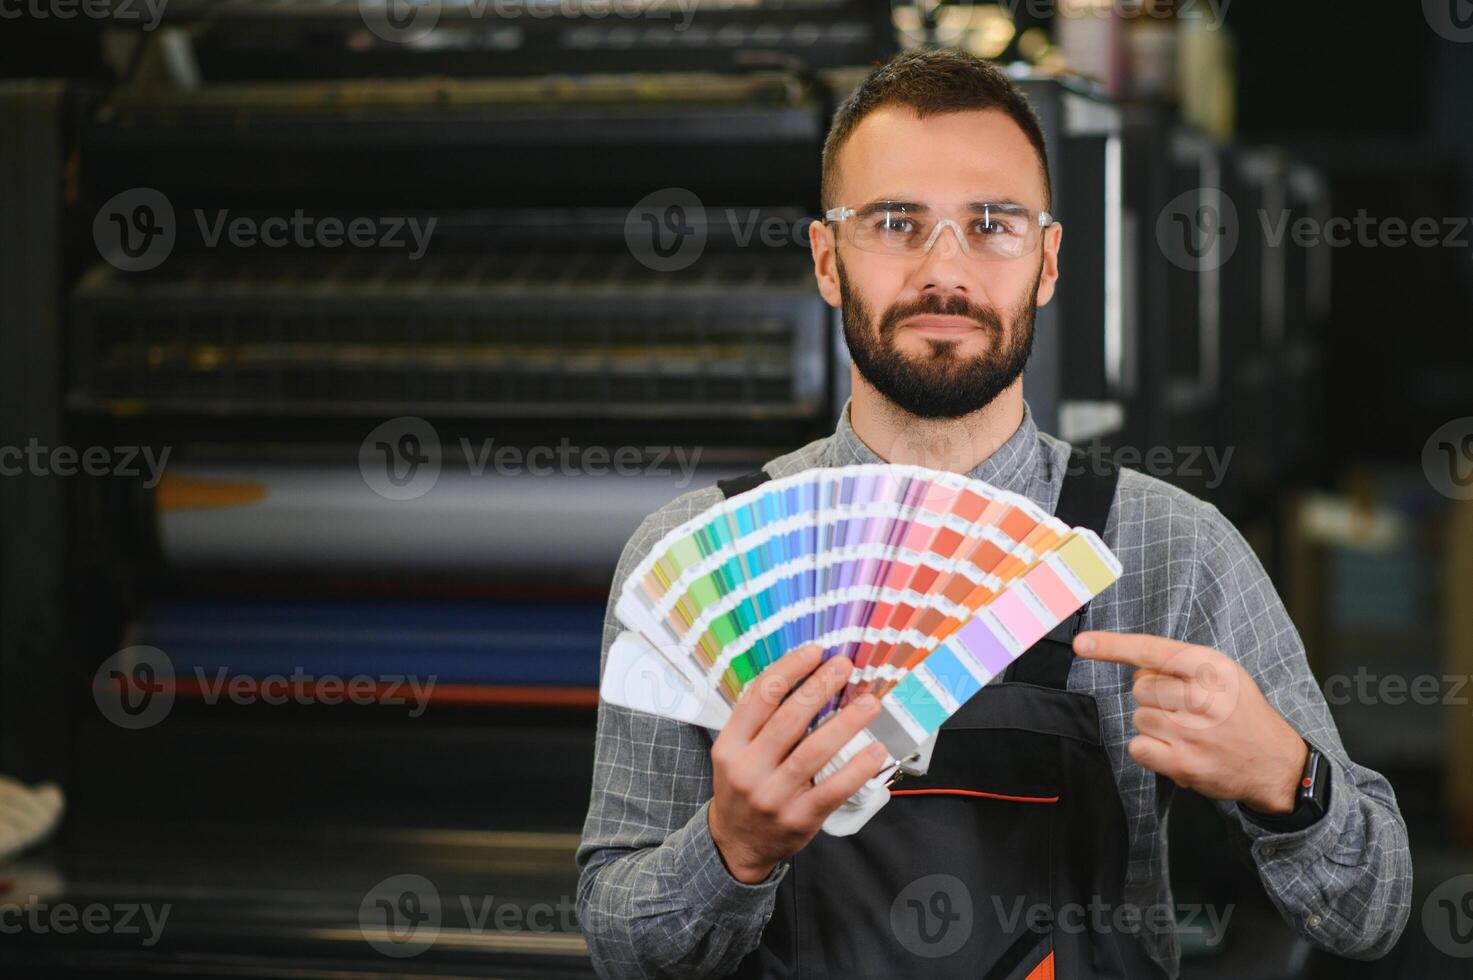 Typograf Stehen mit Farbe Farbfelder beim das Drucken Herstellung foto